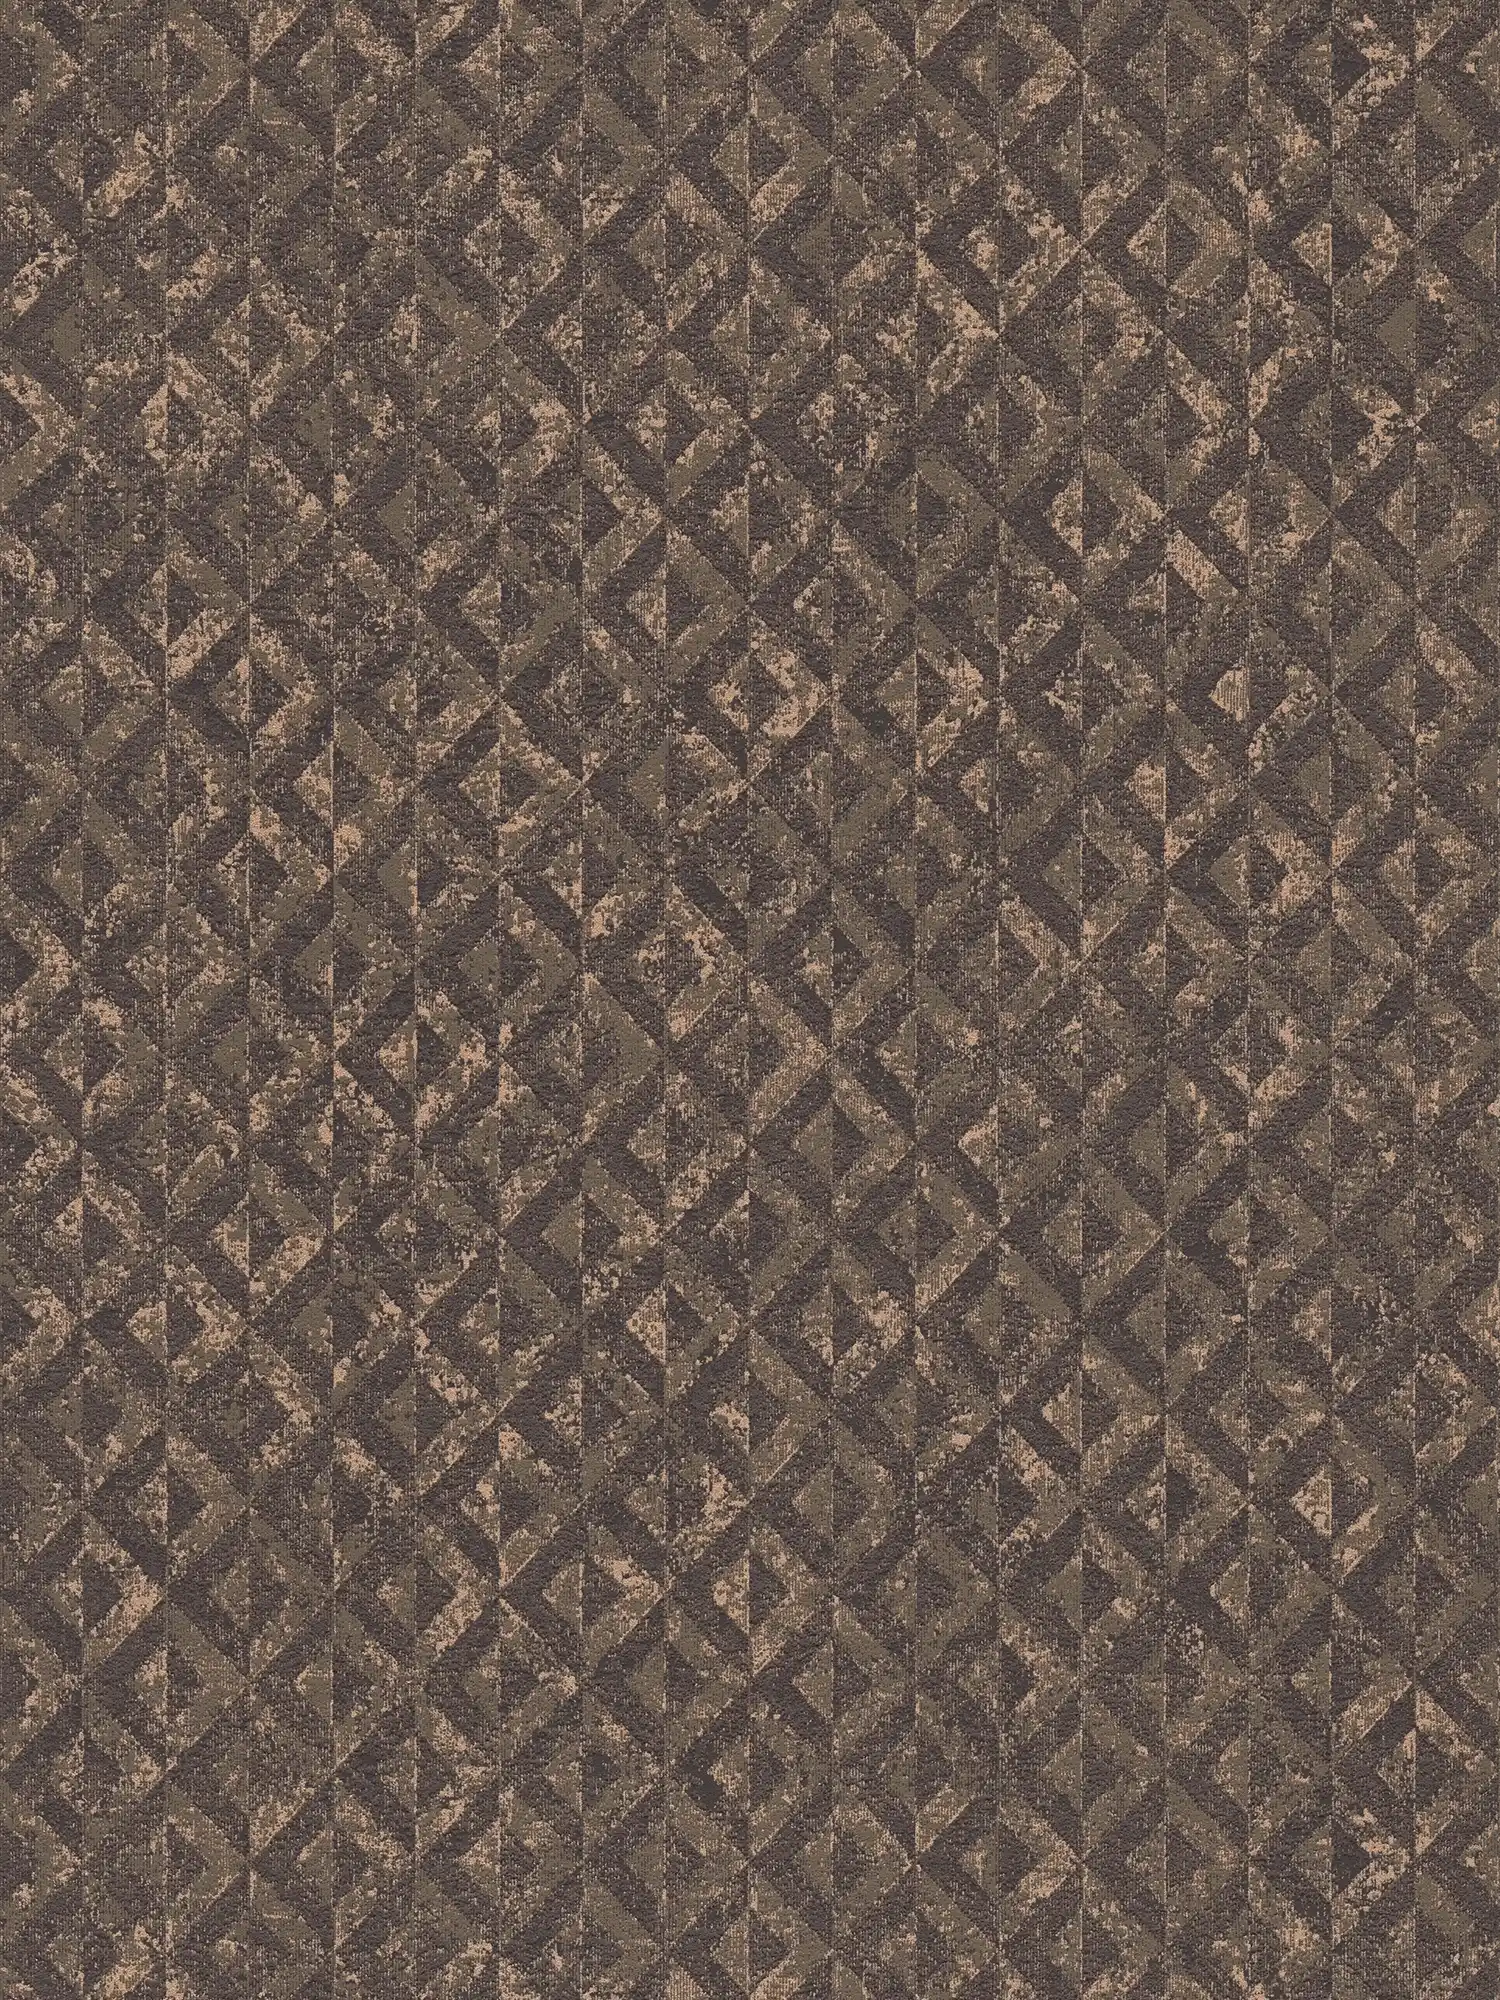 Edle Mustertapete mit abstrakten Details – Schwarz, Braun, Gold
